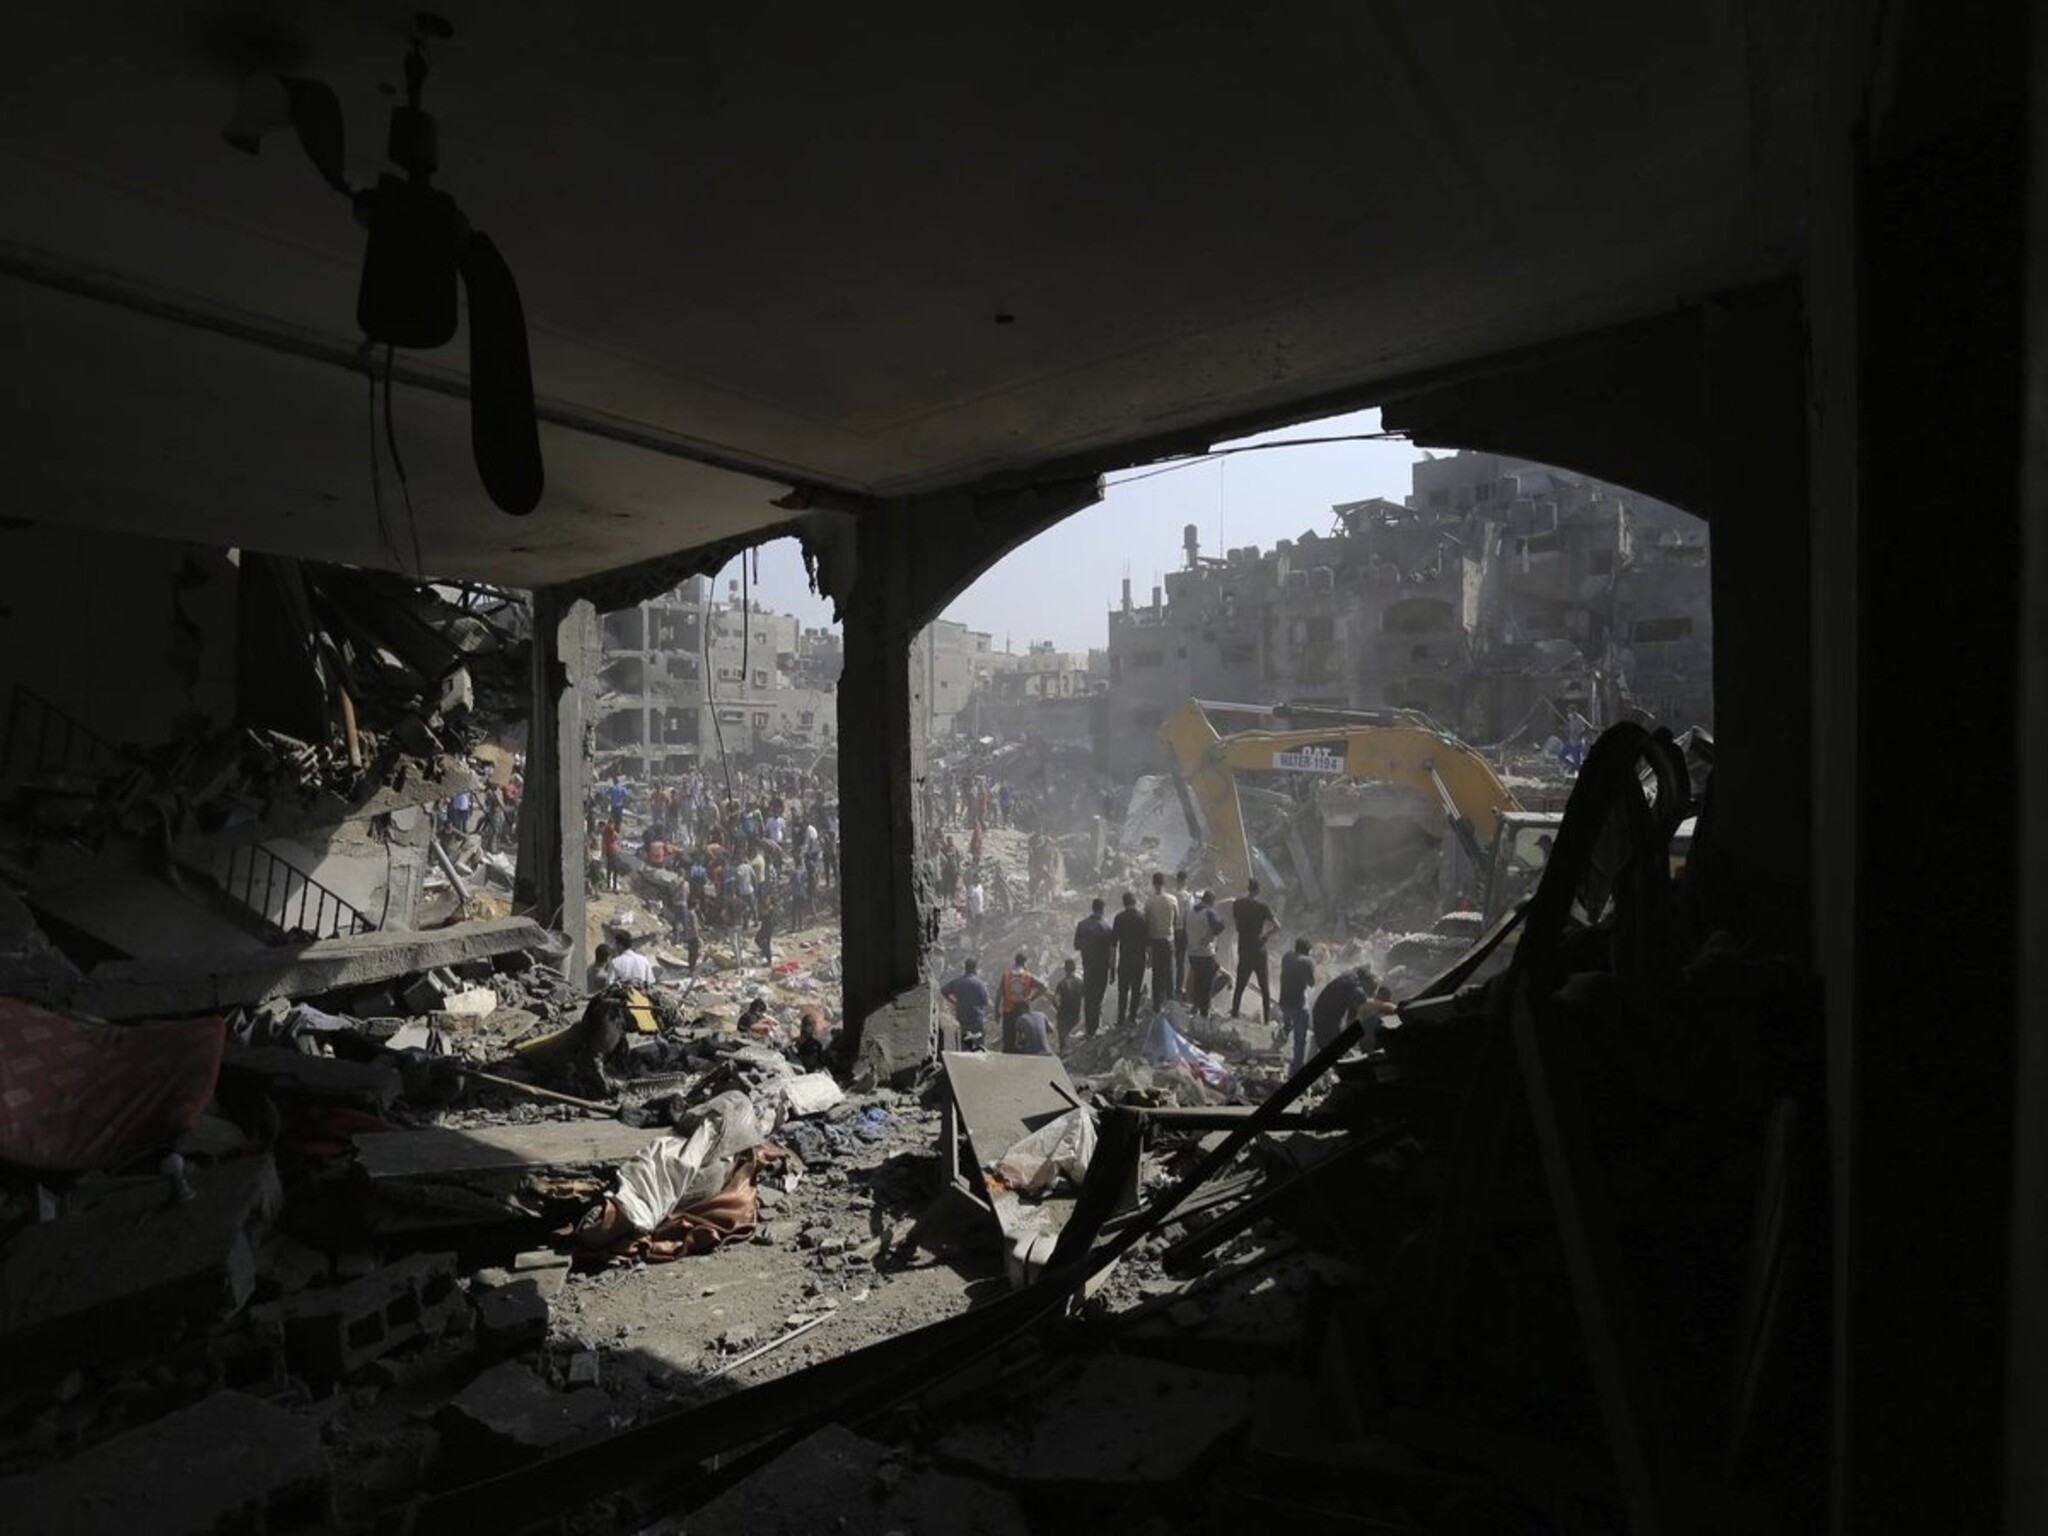  5دول تطالب المحكمة الجنائية الدولية بفتح التحقيق في جرائم حرب فلسطين